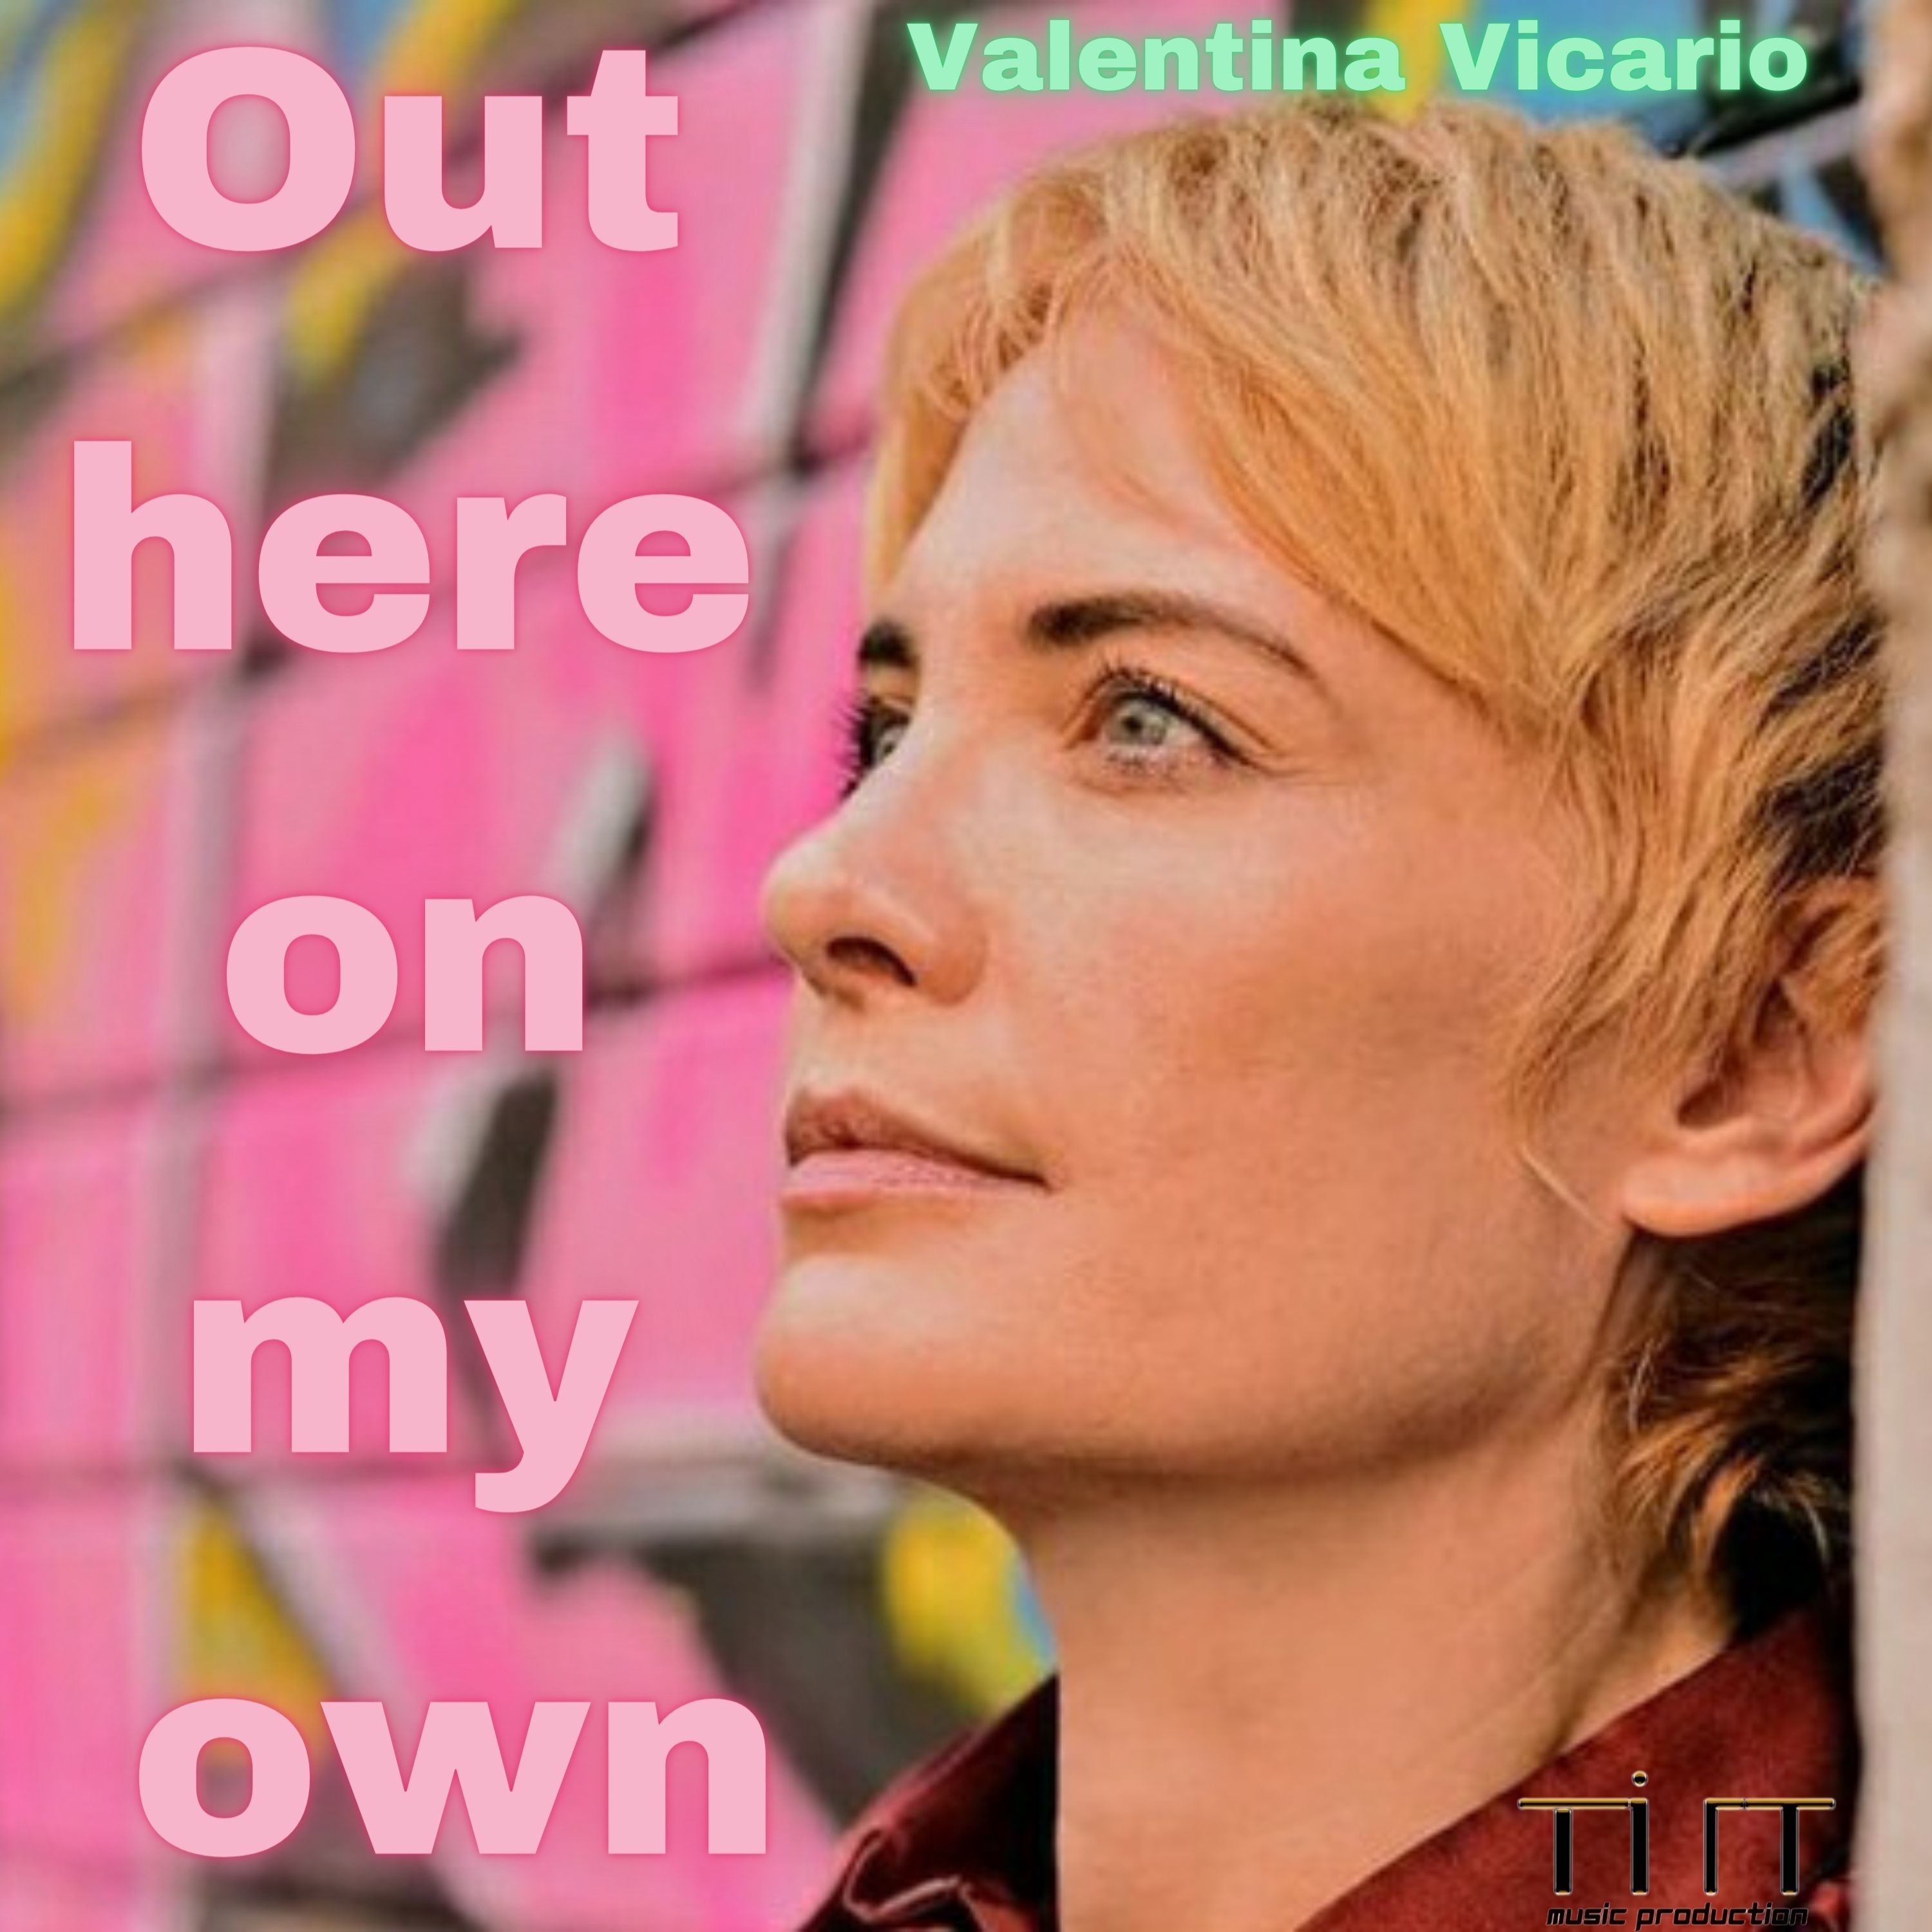 Nuovo brano per Valentina Vicario, protagonista della serie RAI Incantesimo